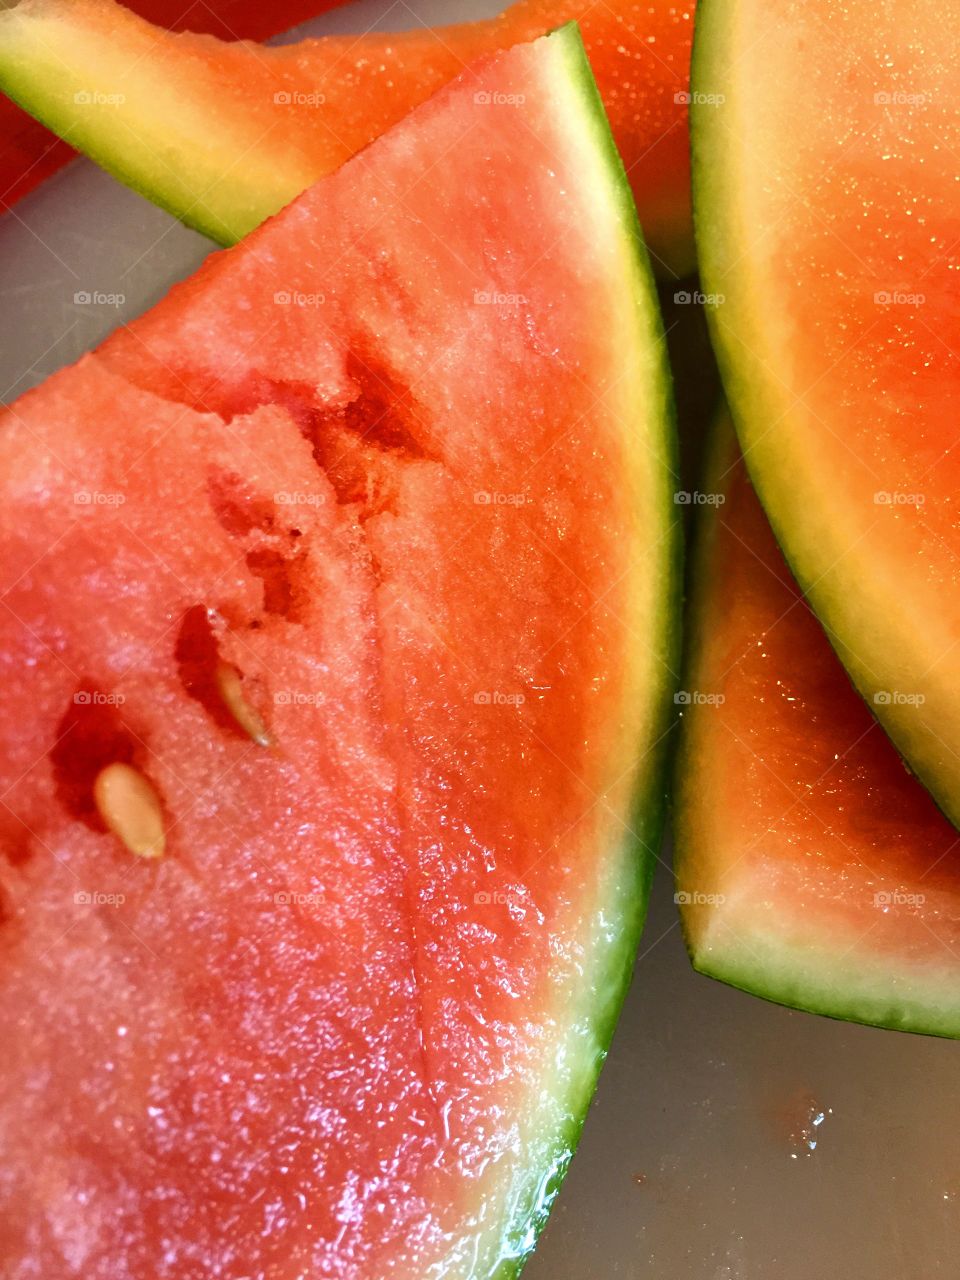 Yum yummy watermelon 